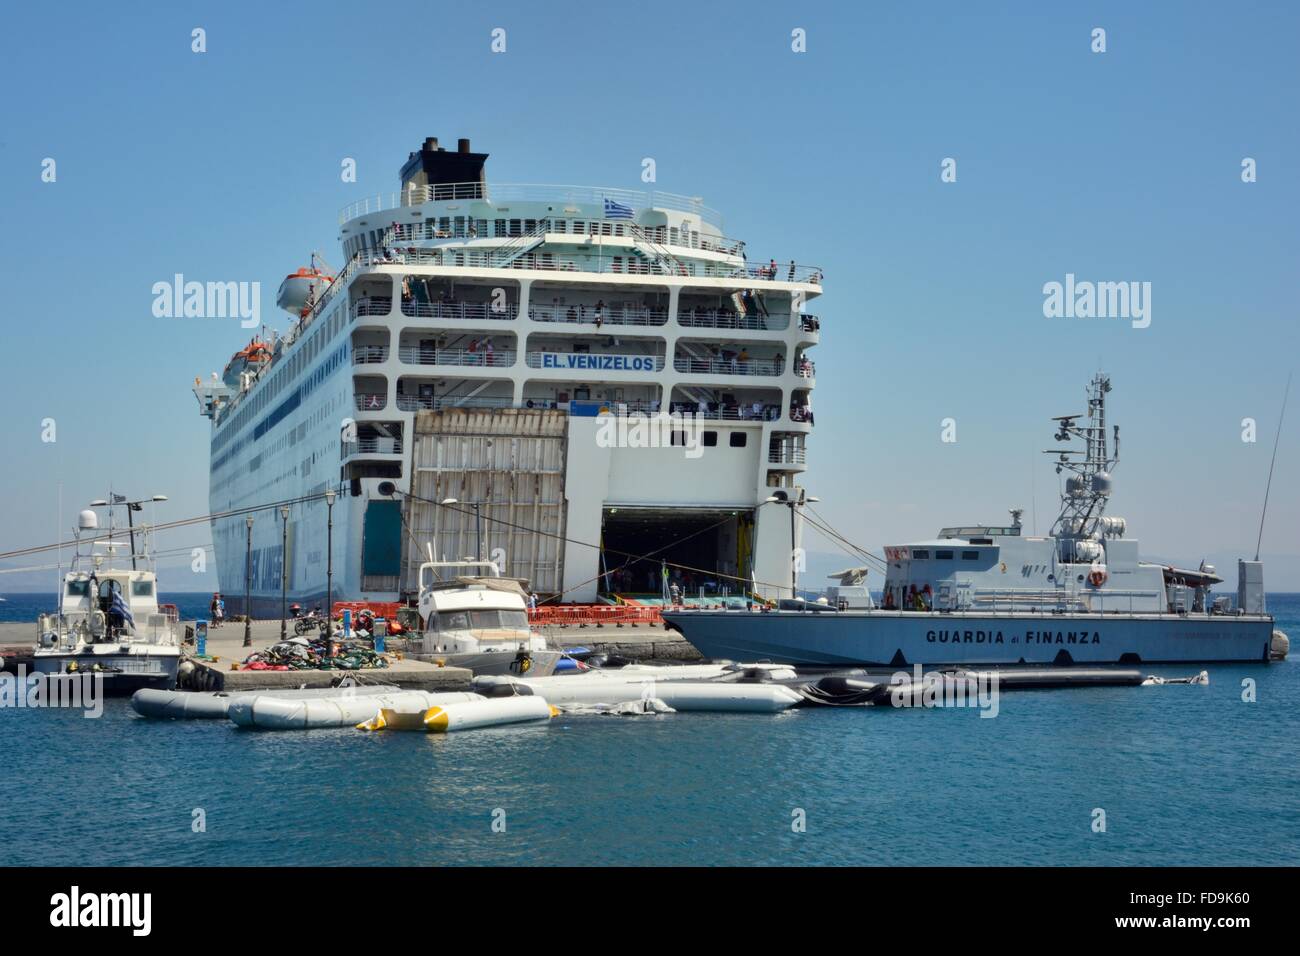 Fähre El Venizelos im Hafen von Kos beladen mit Migranten für Durchgang nach Athen, mit vielen Jollen für die Überfahrt aus der Türkei verwendet. Stockfoto